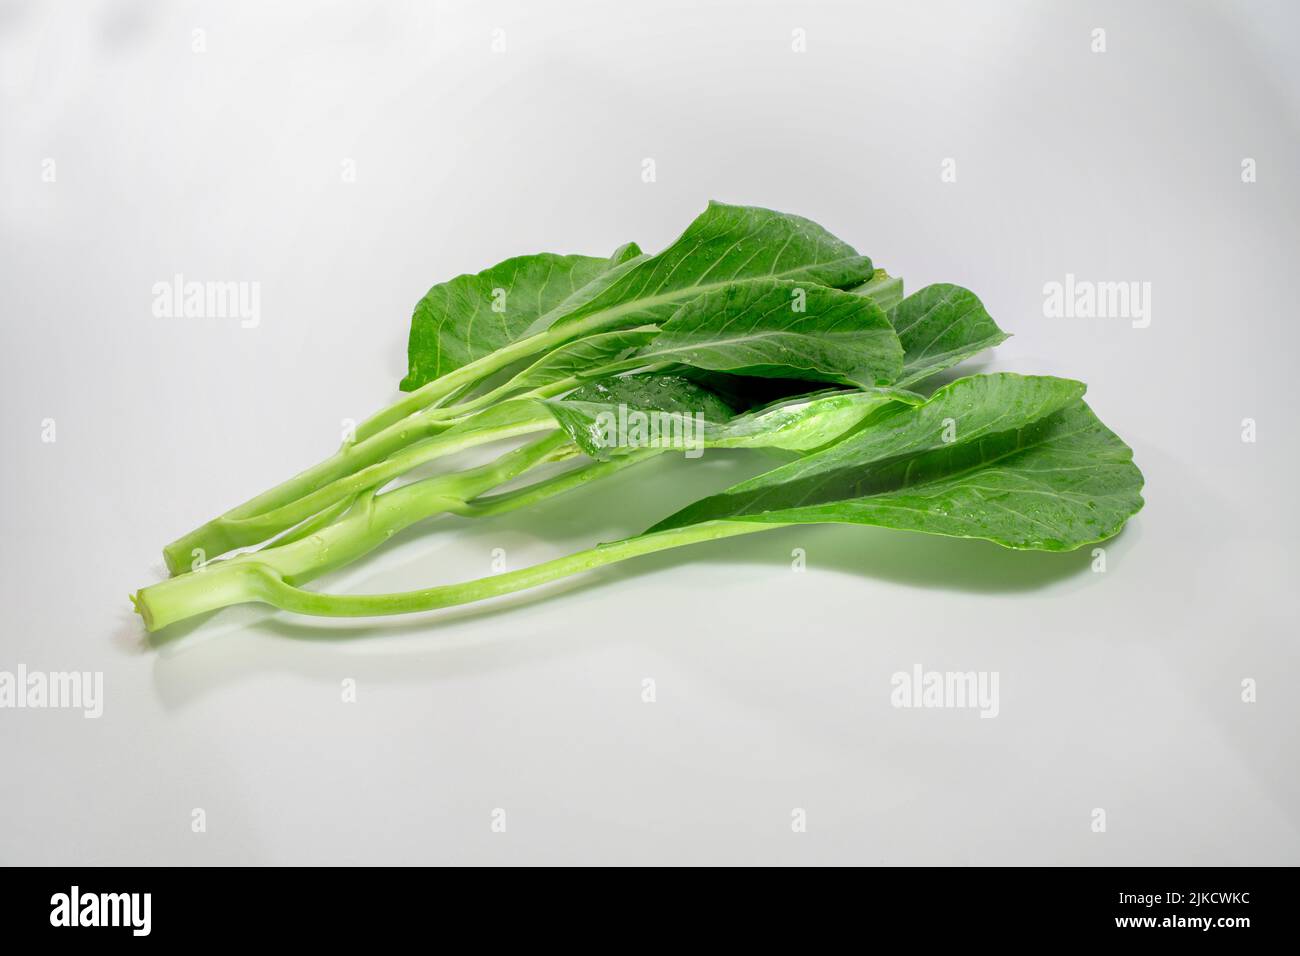 Il verde e il fresco cavolo cinese, il broccoli cinese isolato su sfondo bianco, amplificano il sapore naturale dei verdi. Foto Stock